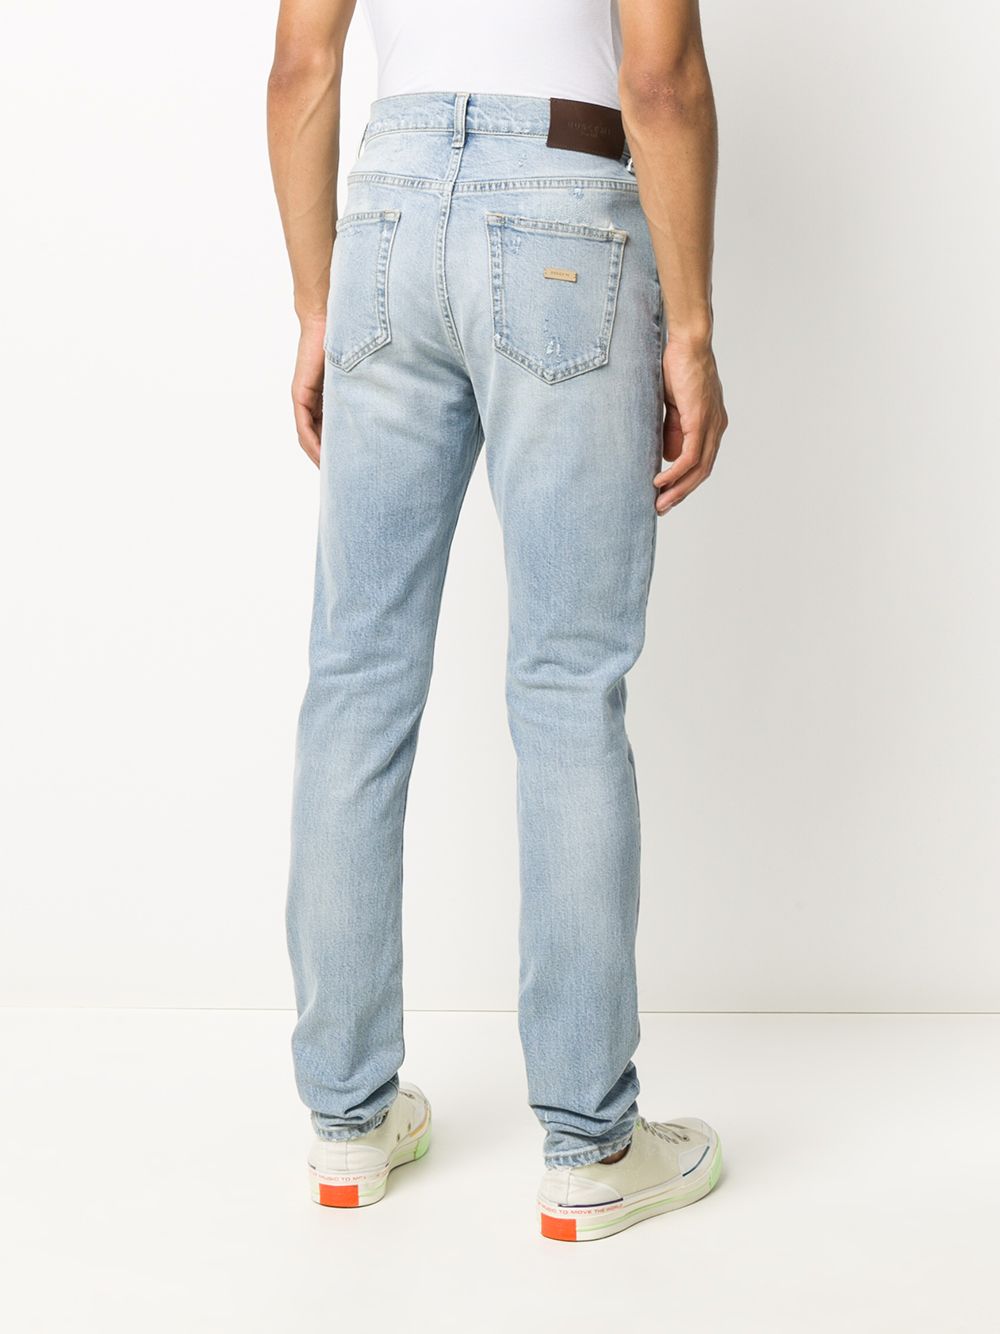 фото Buscemi джинсы кроя слим с эффектом потертости